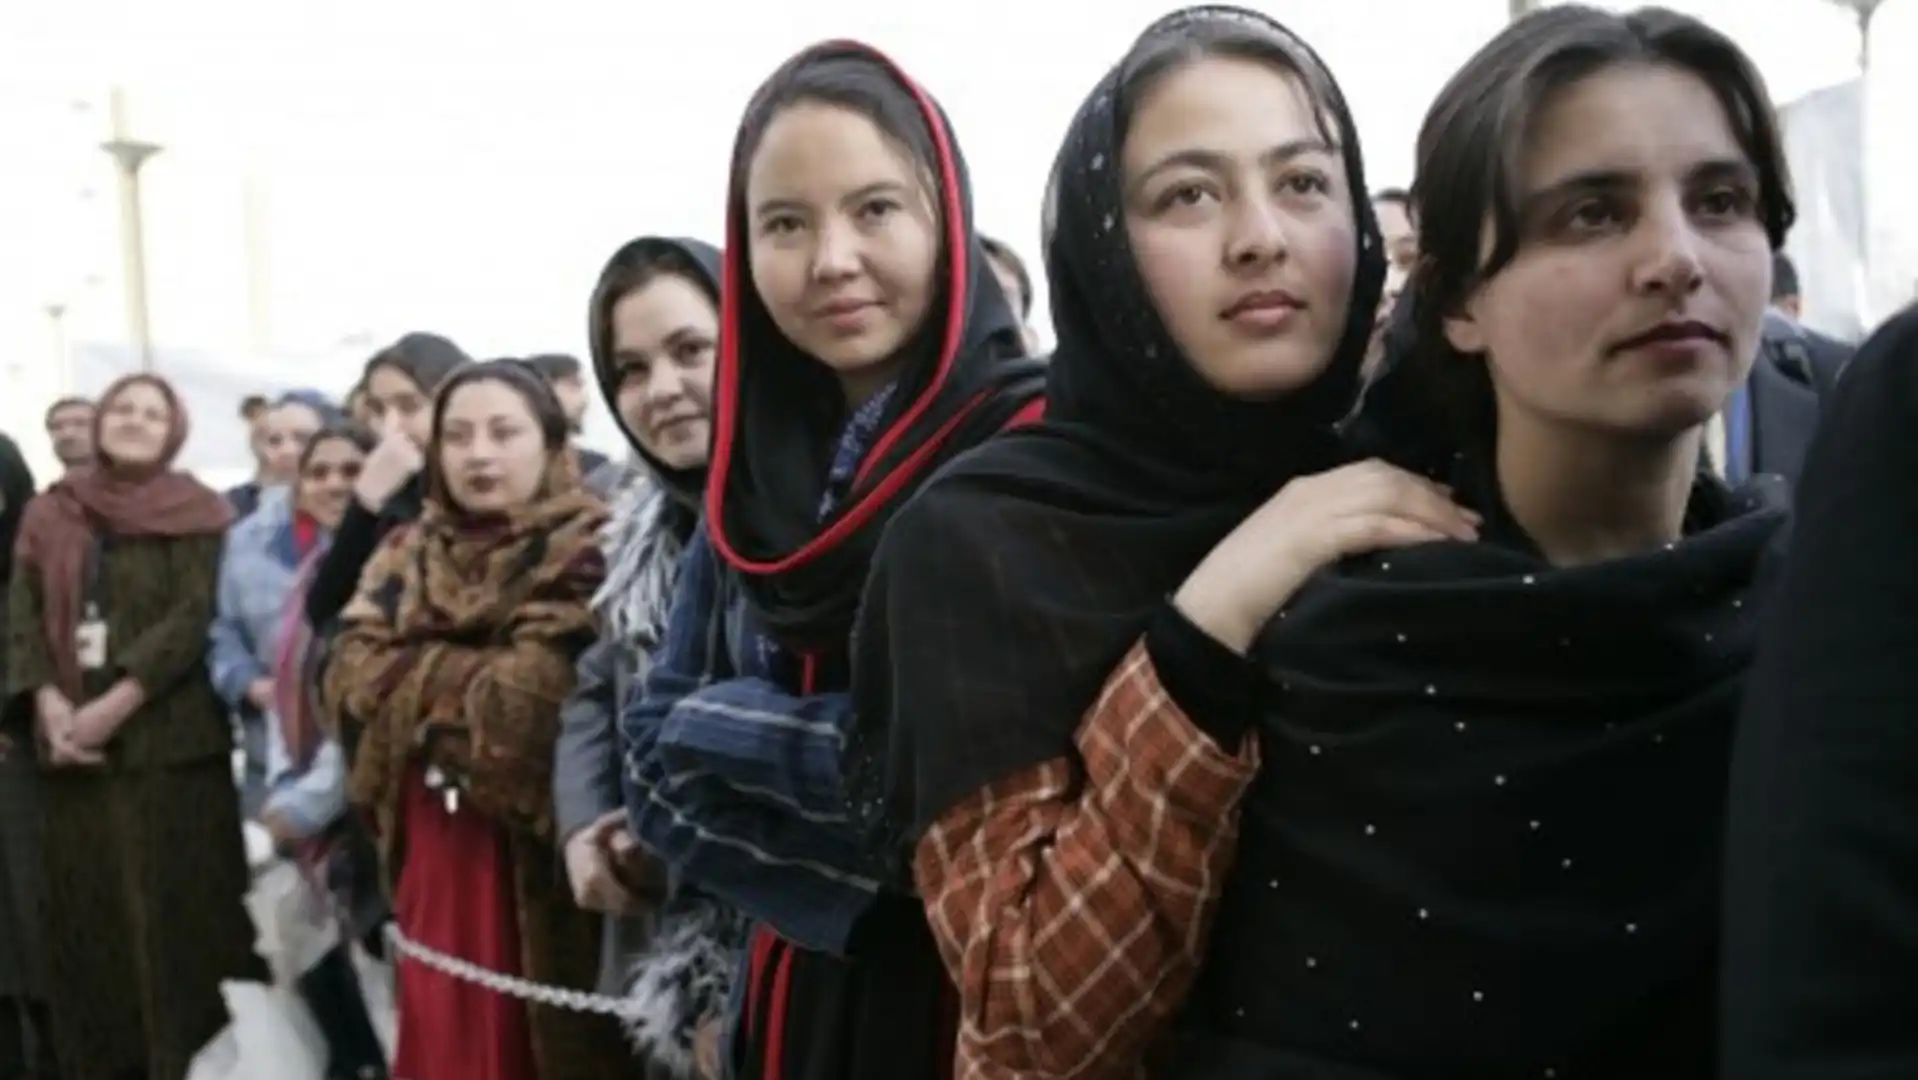 طالبان کی سیاسی ‘ نااہلیت’ کی وجہ سے افغان خواتین کو وجودی بحران کا سامنا : رپورٹ